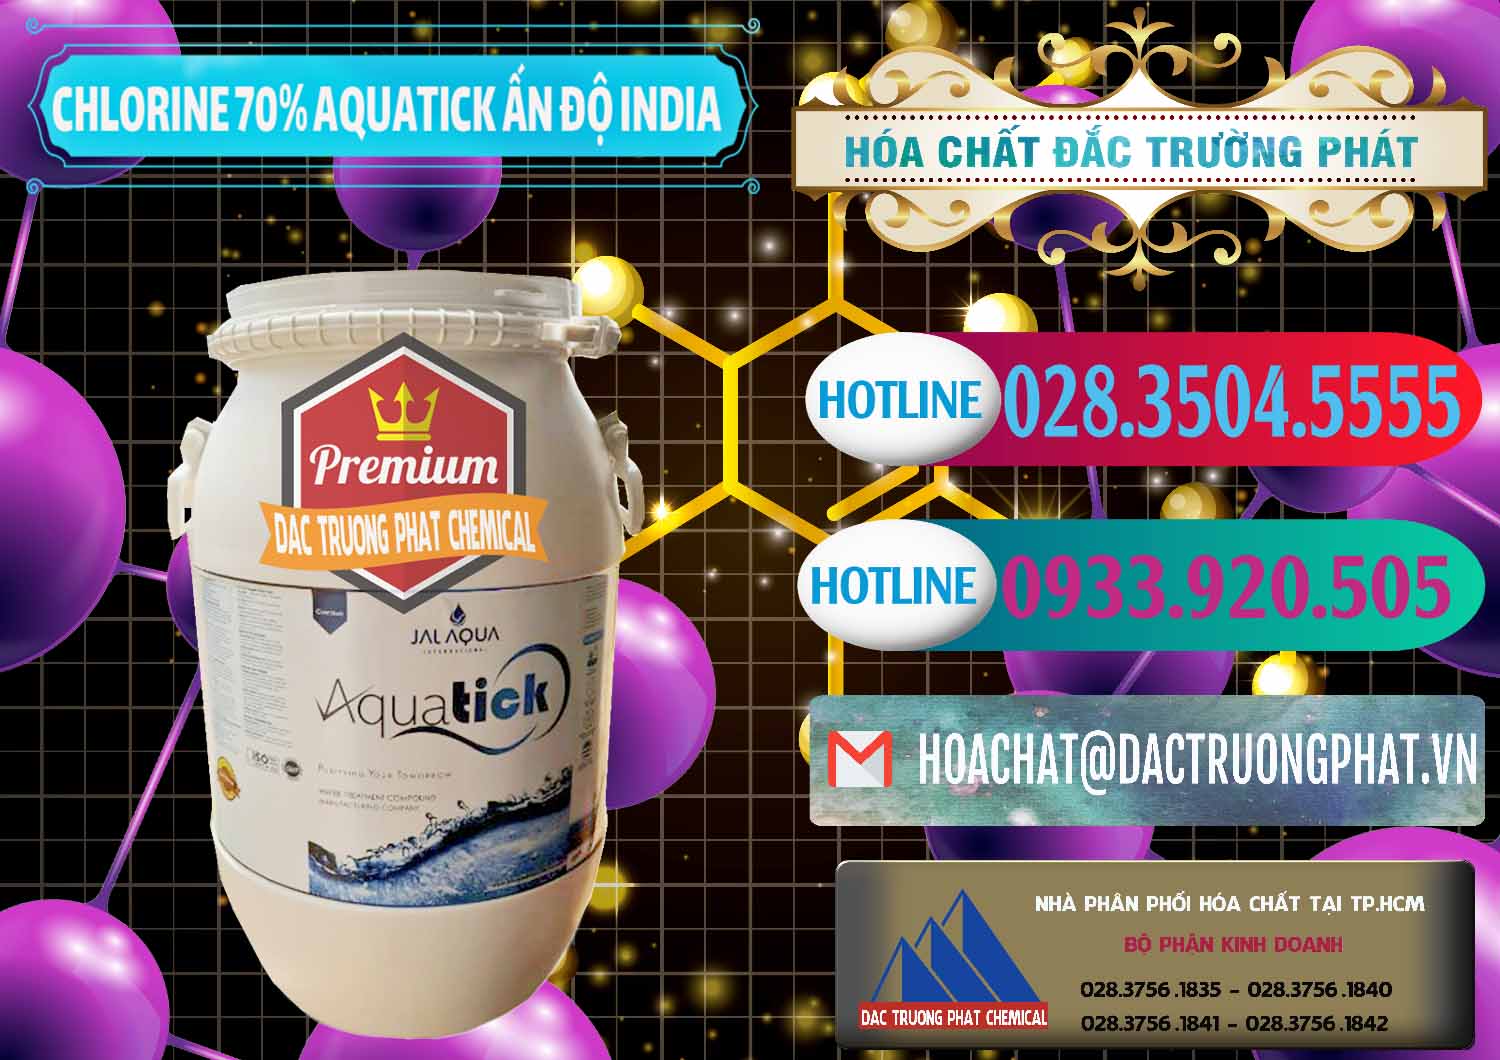 Cty chuyên kinh doanh & bán Chlorine – Clorin 70% Aquatick Jal Aqua Ấn Độ India - 0215 - Đơn vị chuyên cung cấp _ bán hóa chất tại TP.HCM - truongphat.vn